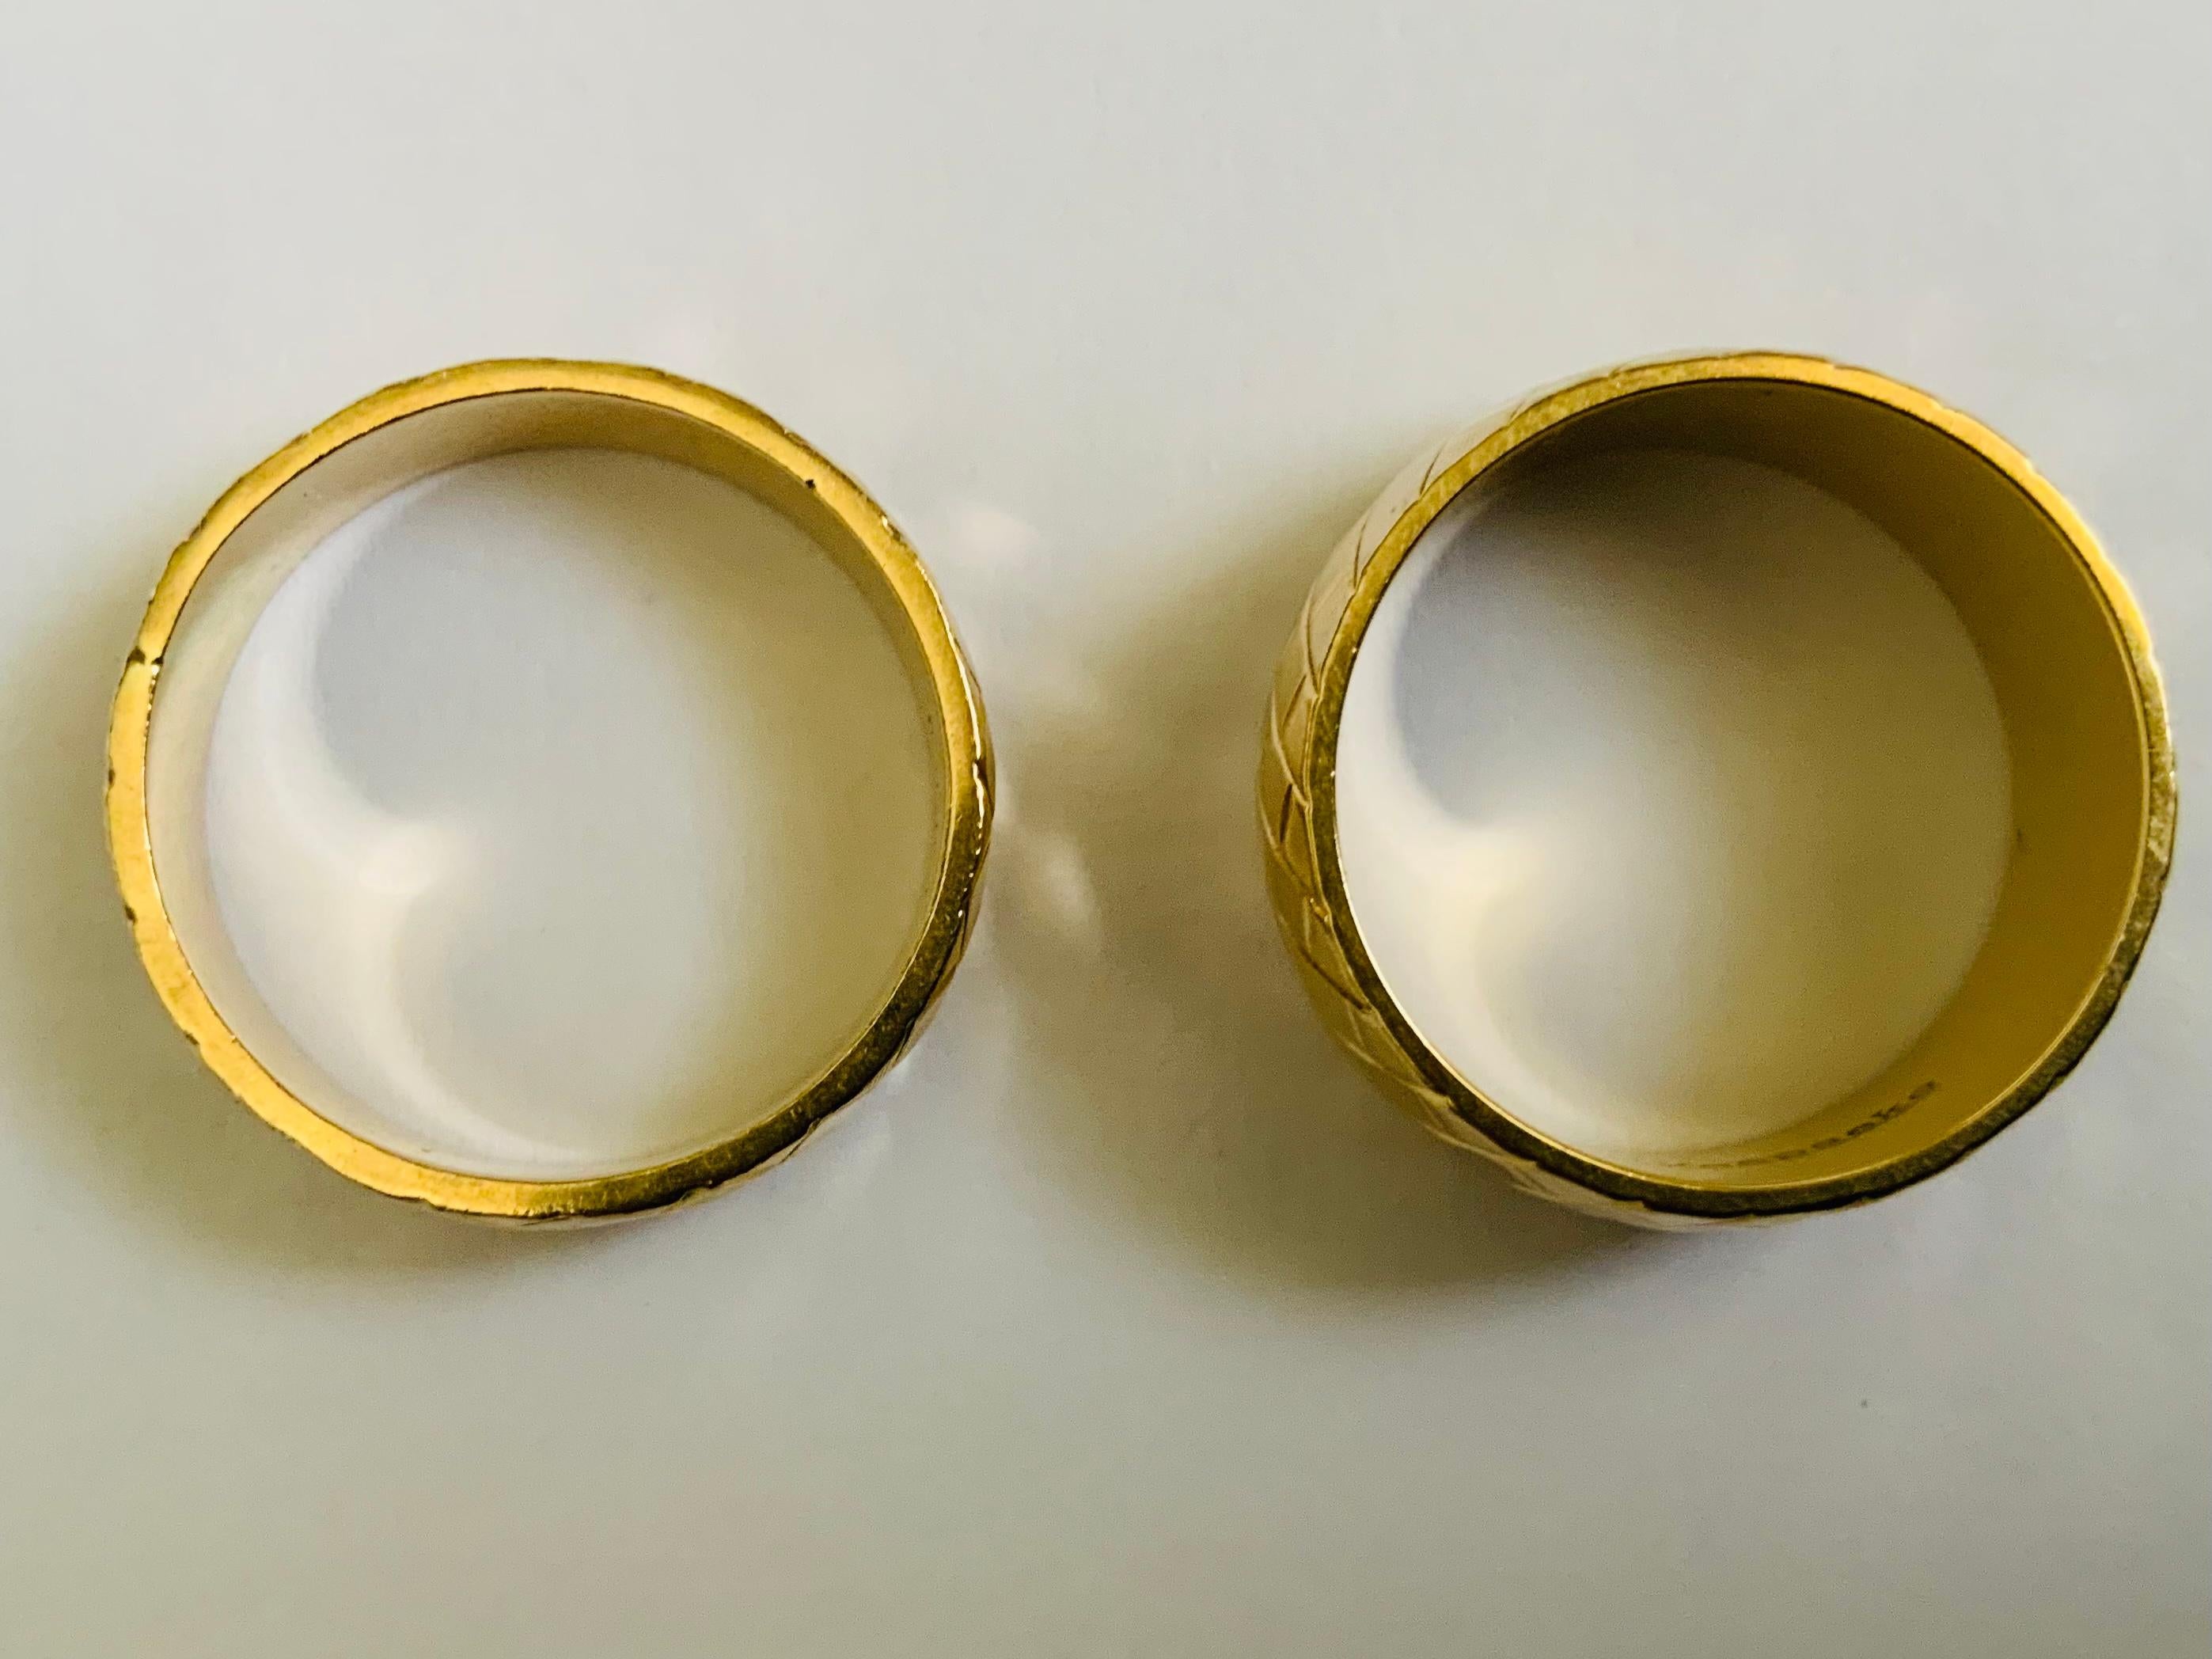 Dies ist ein Satz von 14K Gelbgold Trauringe. Es zeigt zwei gerippte Ringe, von denen einer breiter ist (8,2 mm) als der andere (5,76 mm). Die Ringe sind mit 14K Keepsake gestempelt. Sie wiegen 6,7 und 4,8 Gramm und sind 6,5 bzw. 6,75 groß.